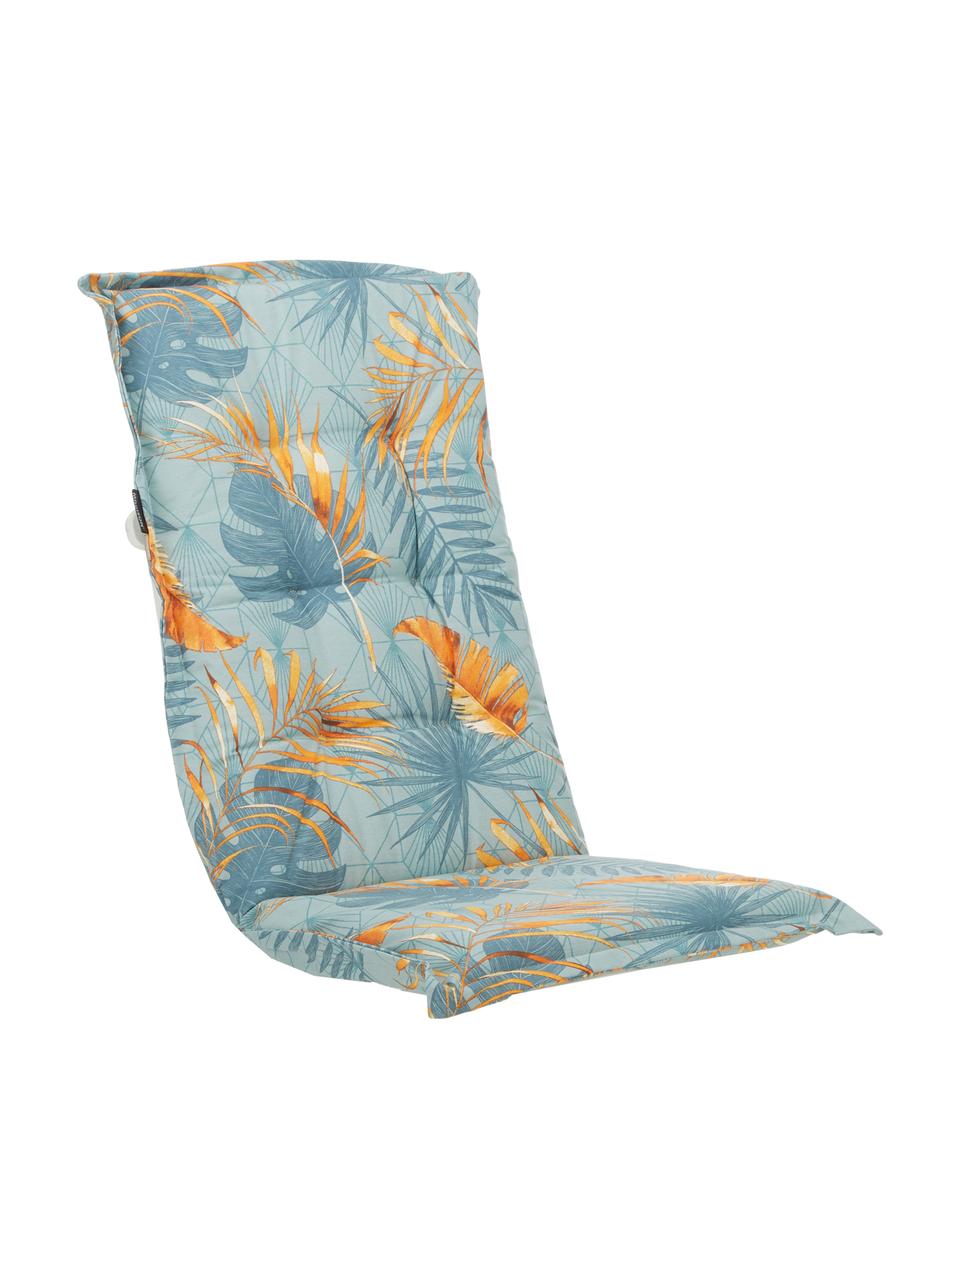 Cuscino sedia con schienale e stampa tropicale Dotan, 50% cotone, 45% poliestere,
5% altre fibre, Azzurro, blu, arancione, Larg. 50 x Lung. 123 cm